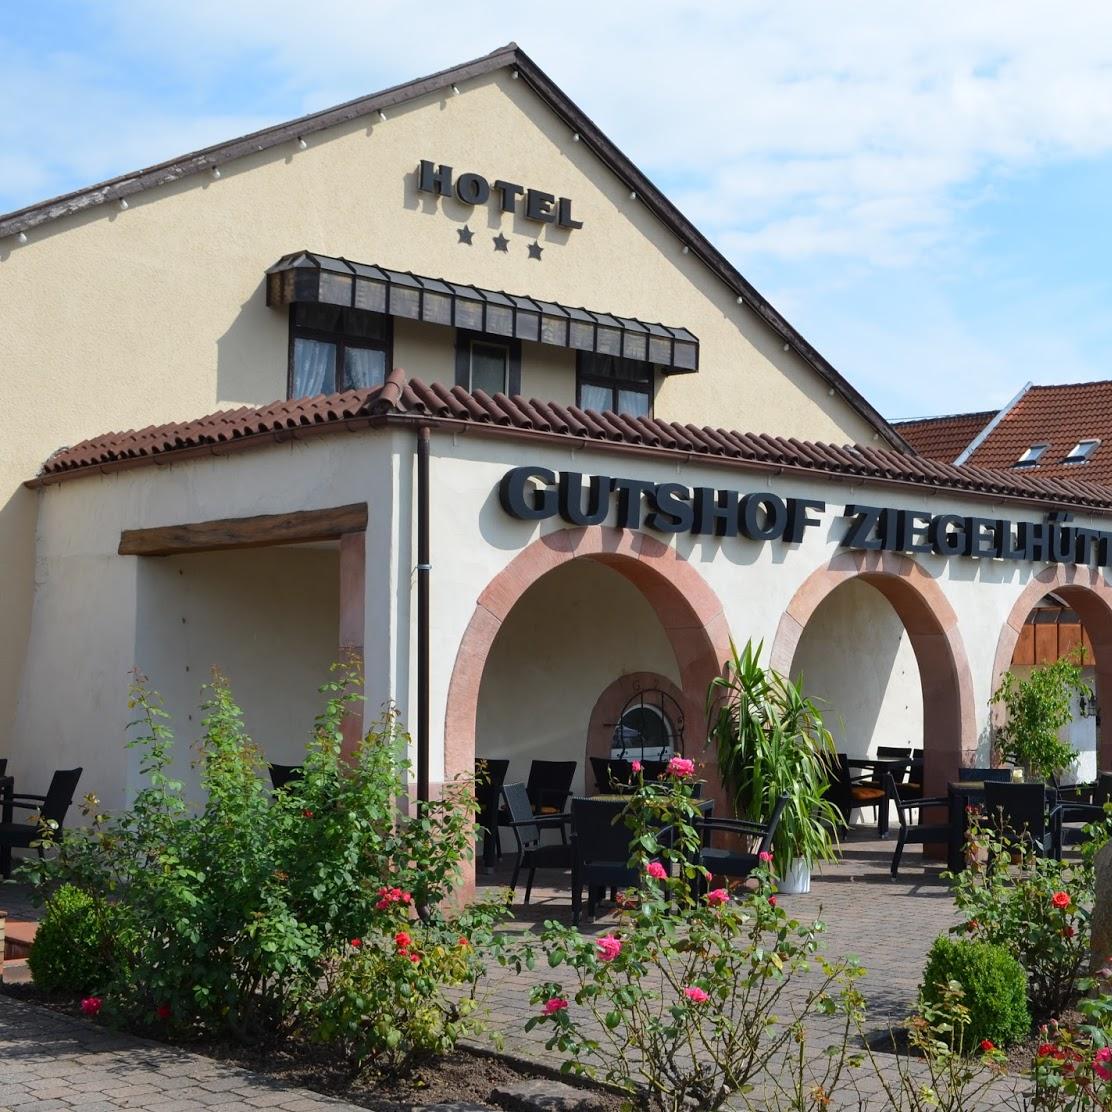 Restaurant "Gasthaus zum Winzer" in  Maikammer